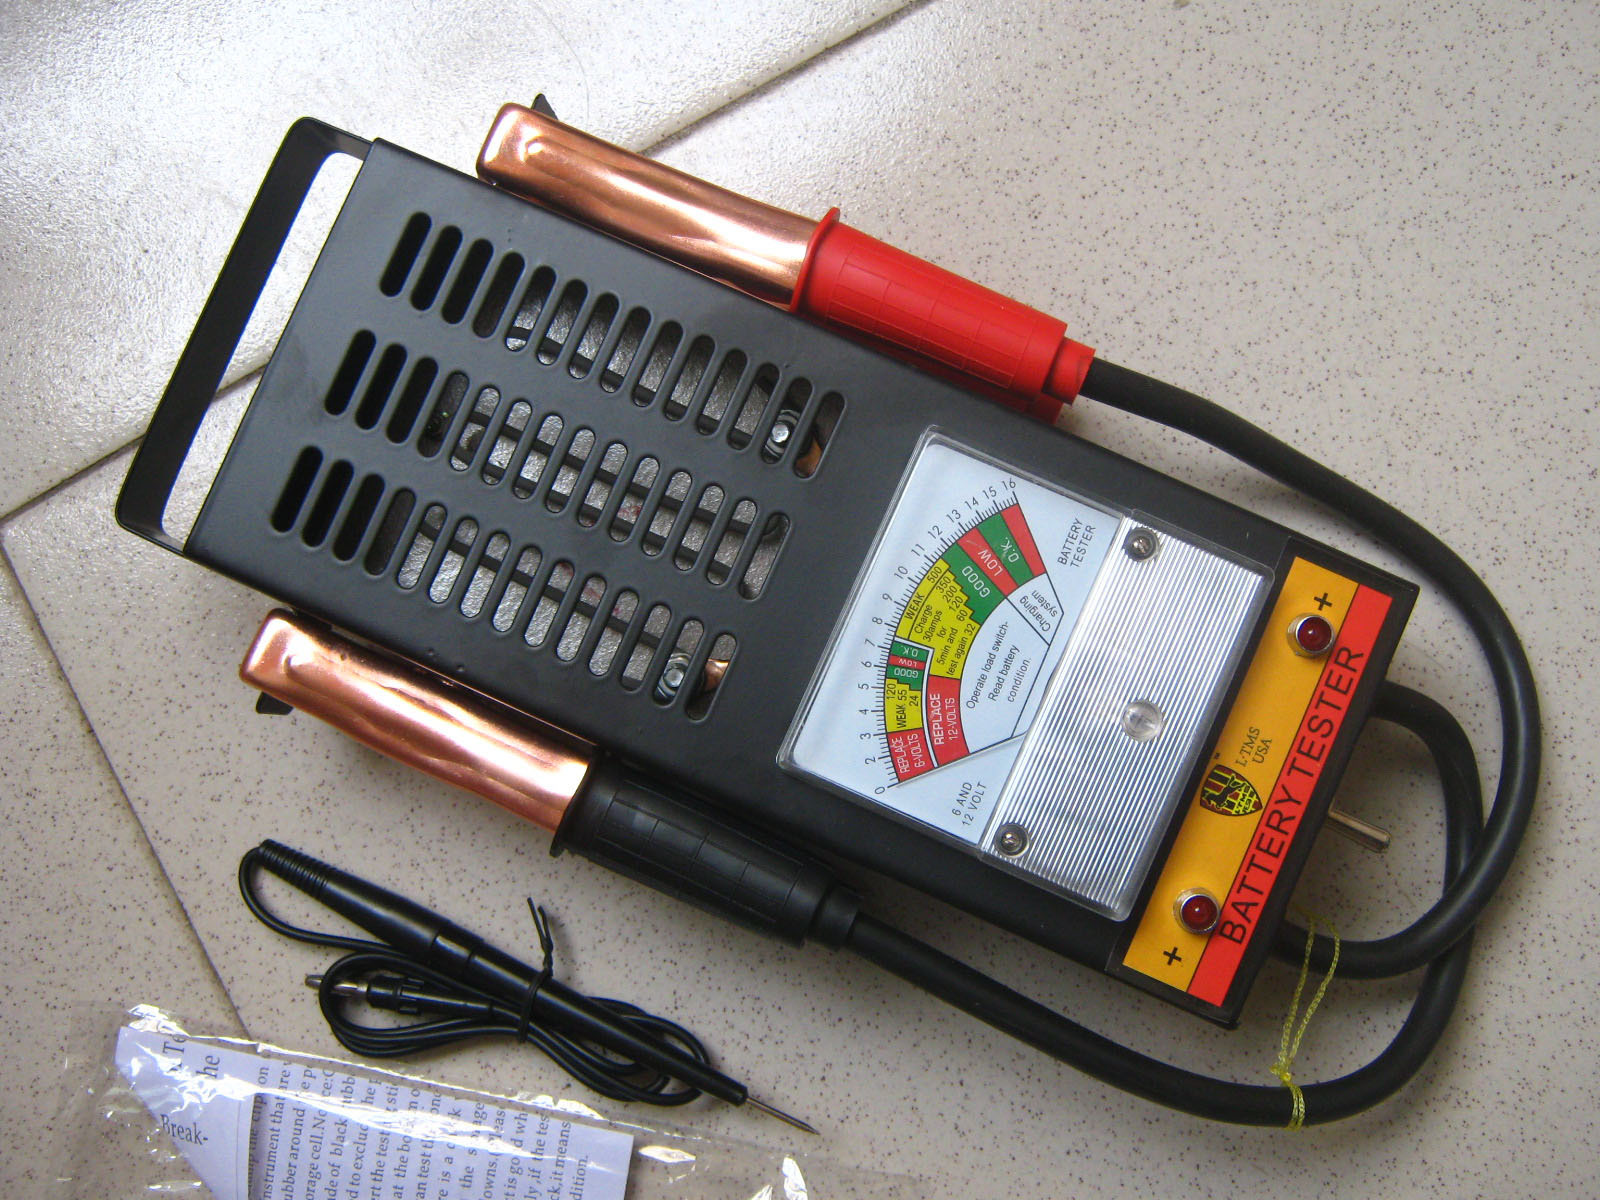 电瓶检测仪hbv200型蓄电池测试仪/电瓶修复工具/电瓶检测汽保工具